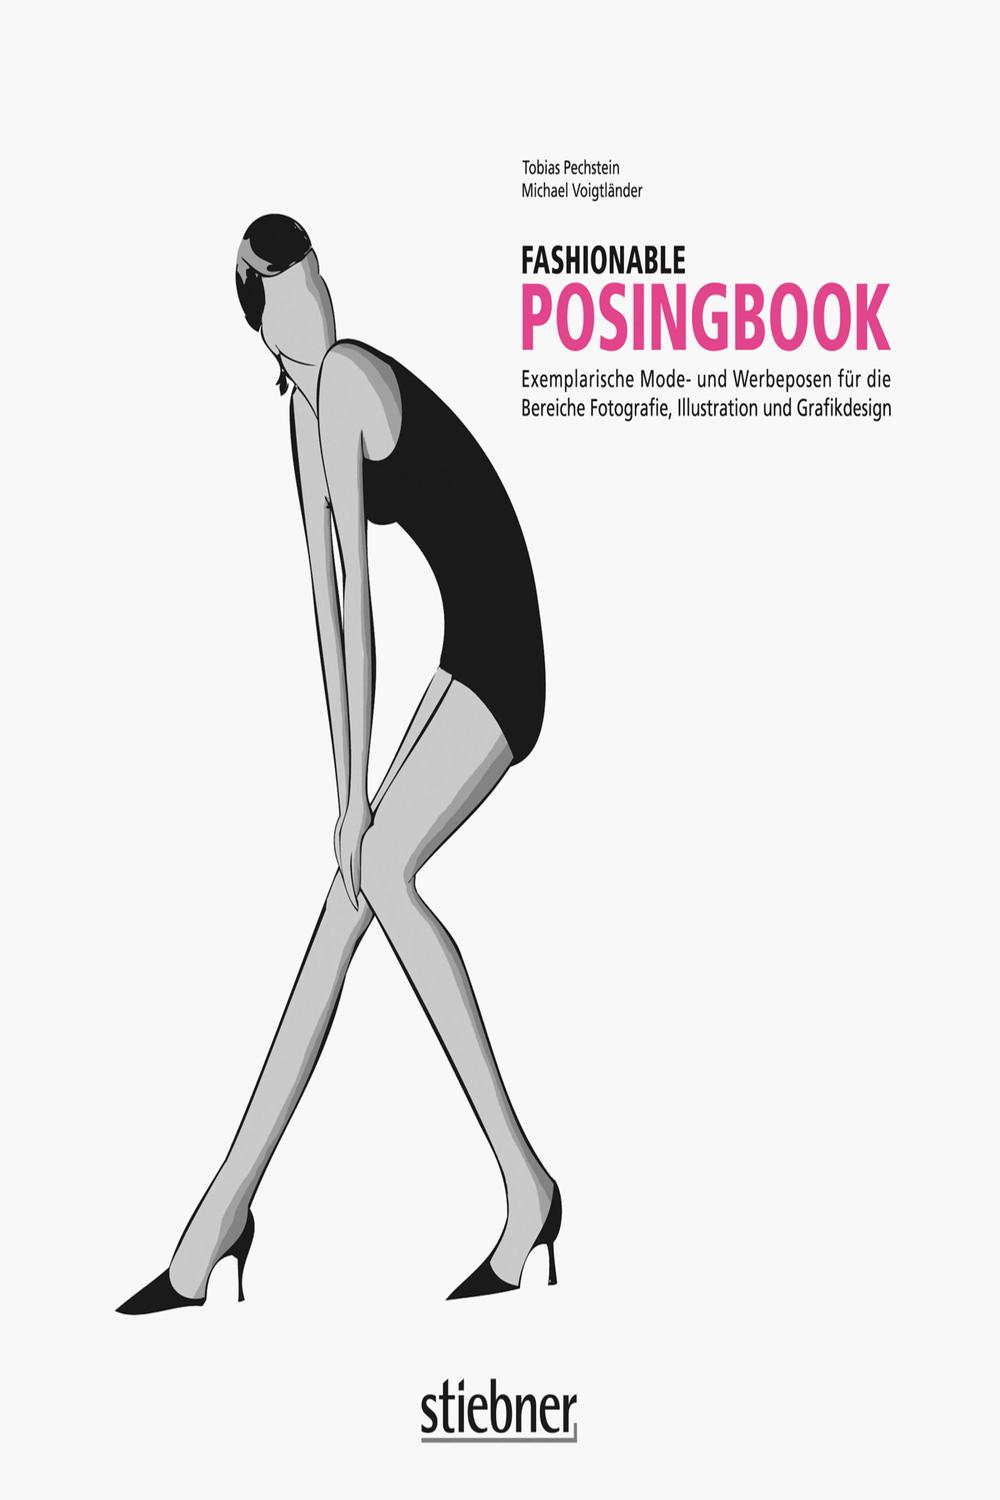 Fashionable Posingbook - Michael Voigtländer, Tobias Pechstein